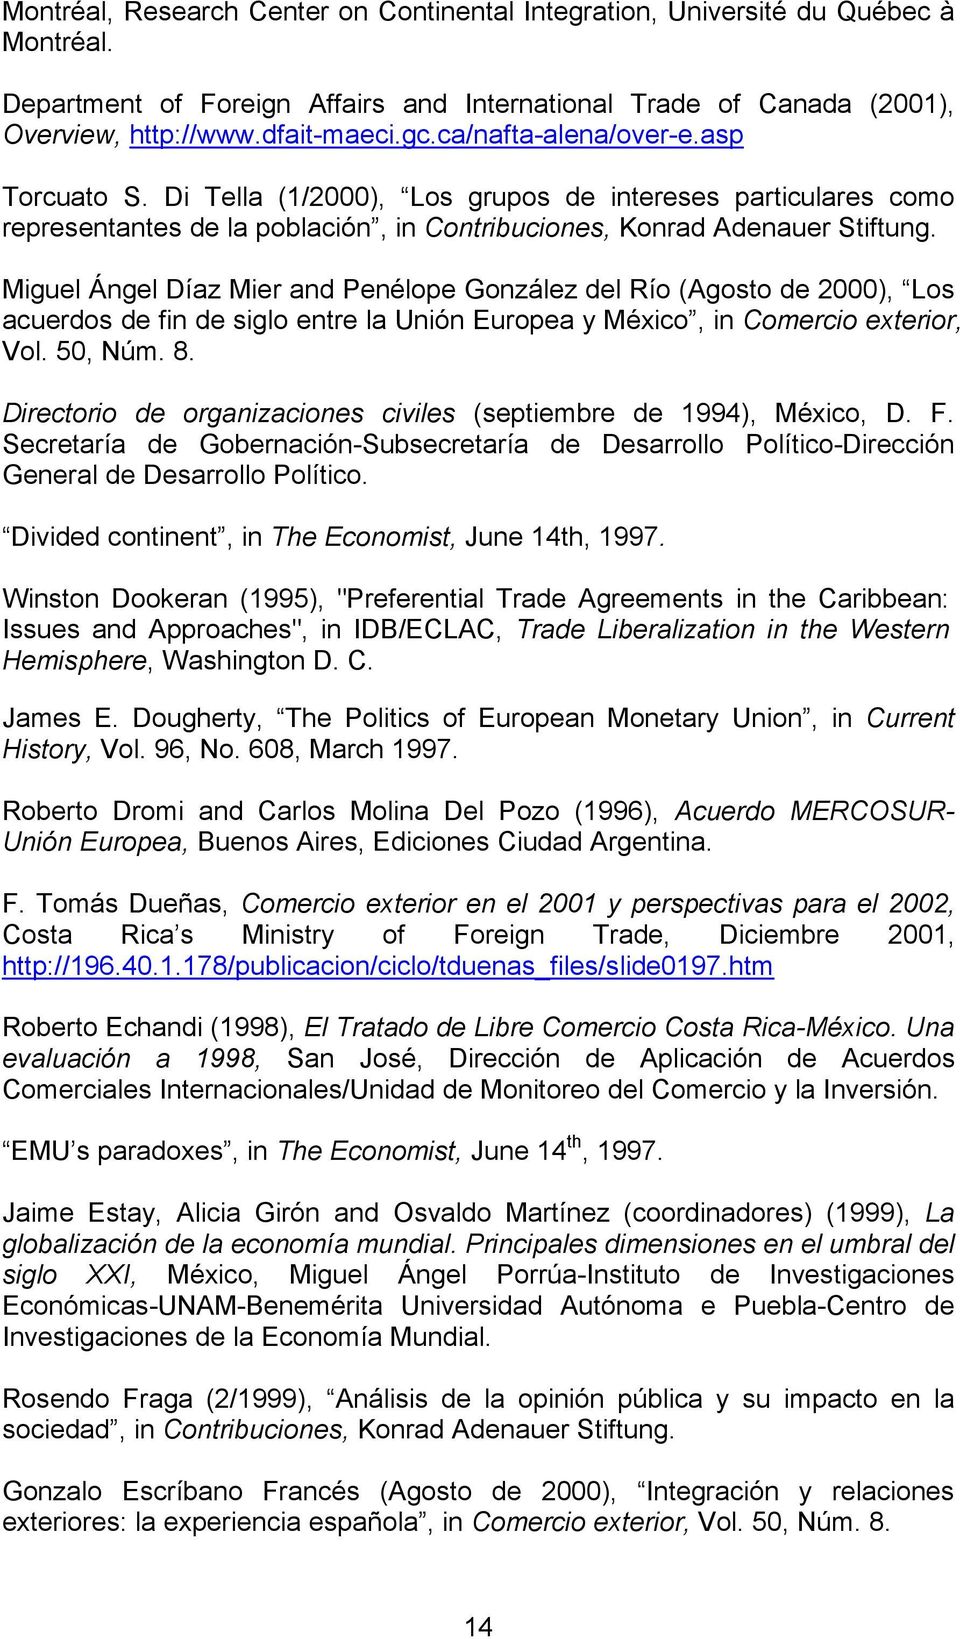 Miguel Ángel Díaz Mier and Penélope González del Río (Agosto de 2000), Los acuerdos de fin de siglo entre la Unión Europea y México, in Comercio exterior, Vol. 50, Núm. 8.